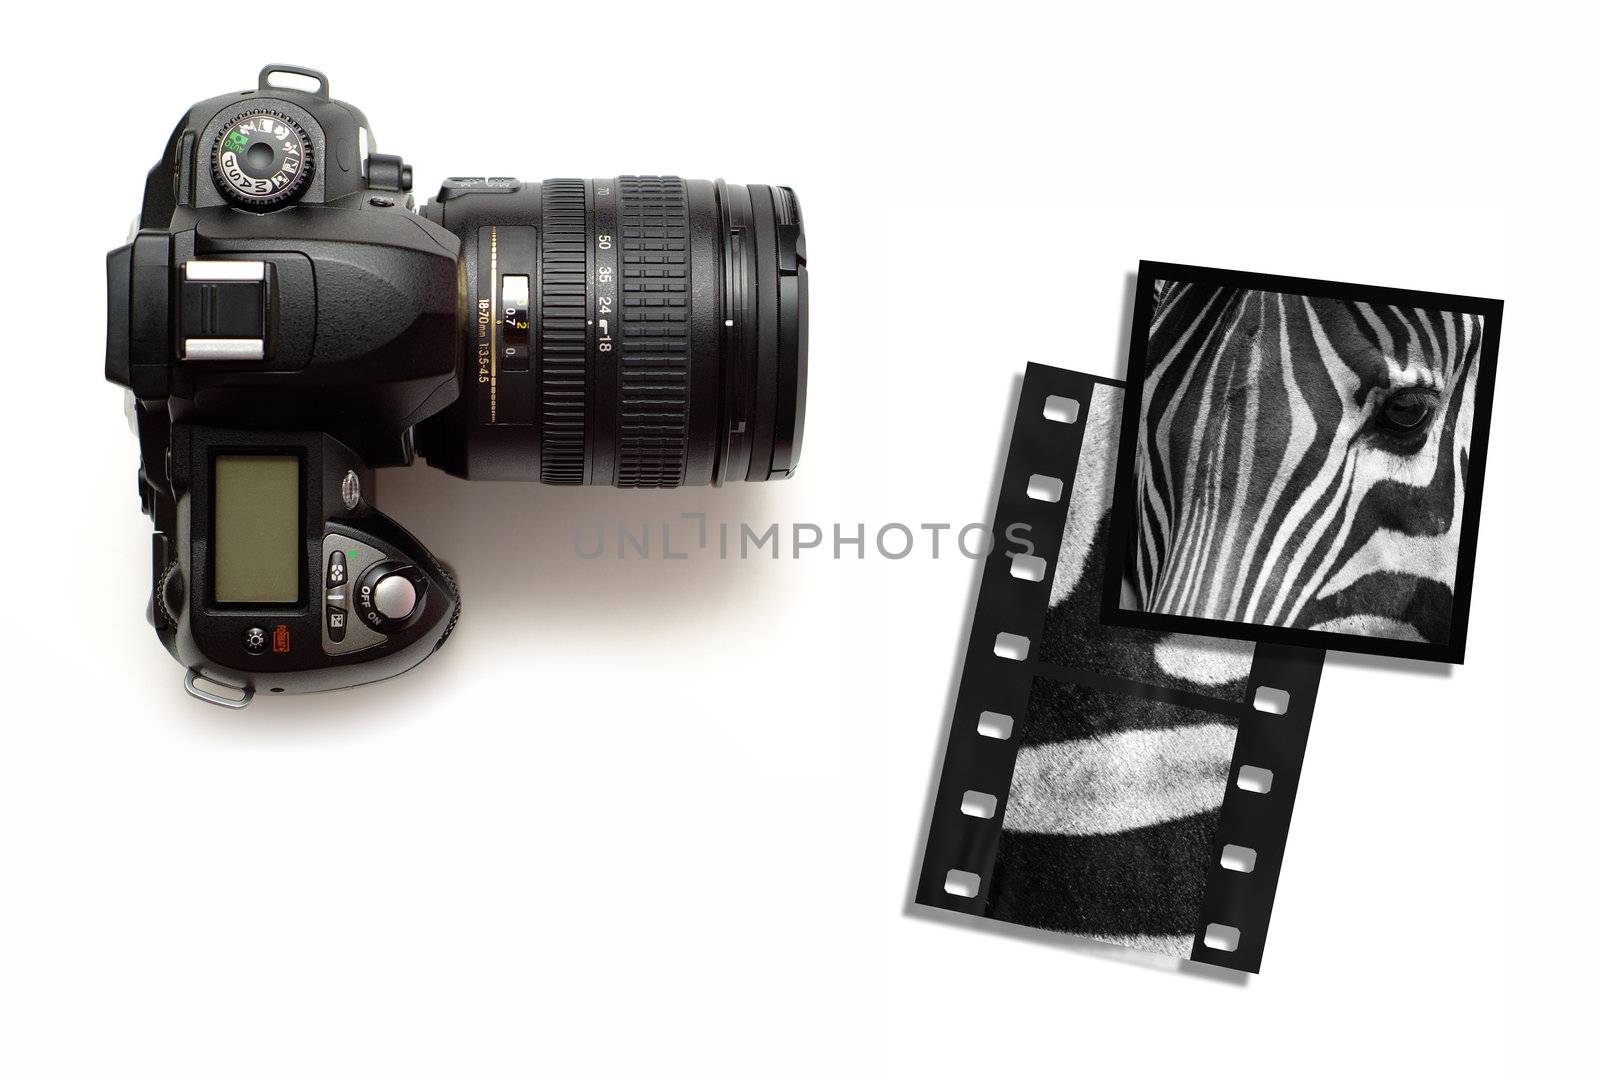 Modern digital slr camera or slide film camera with wildlife zebra images